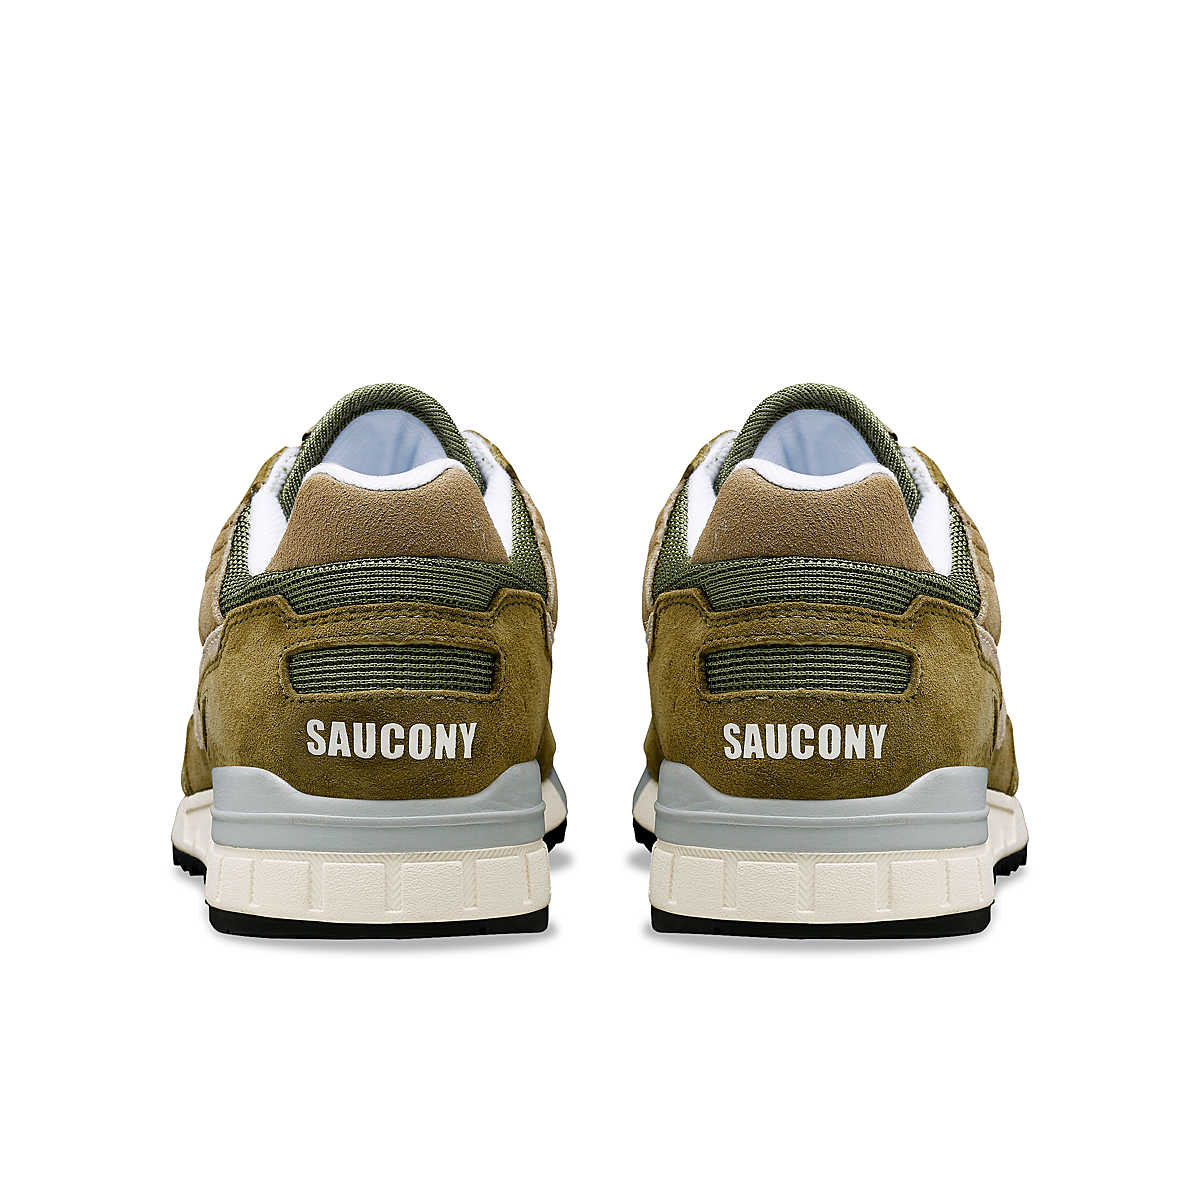 UOMO SHADOW 5000 SAGE - Saucony Originals